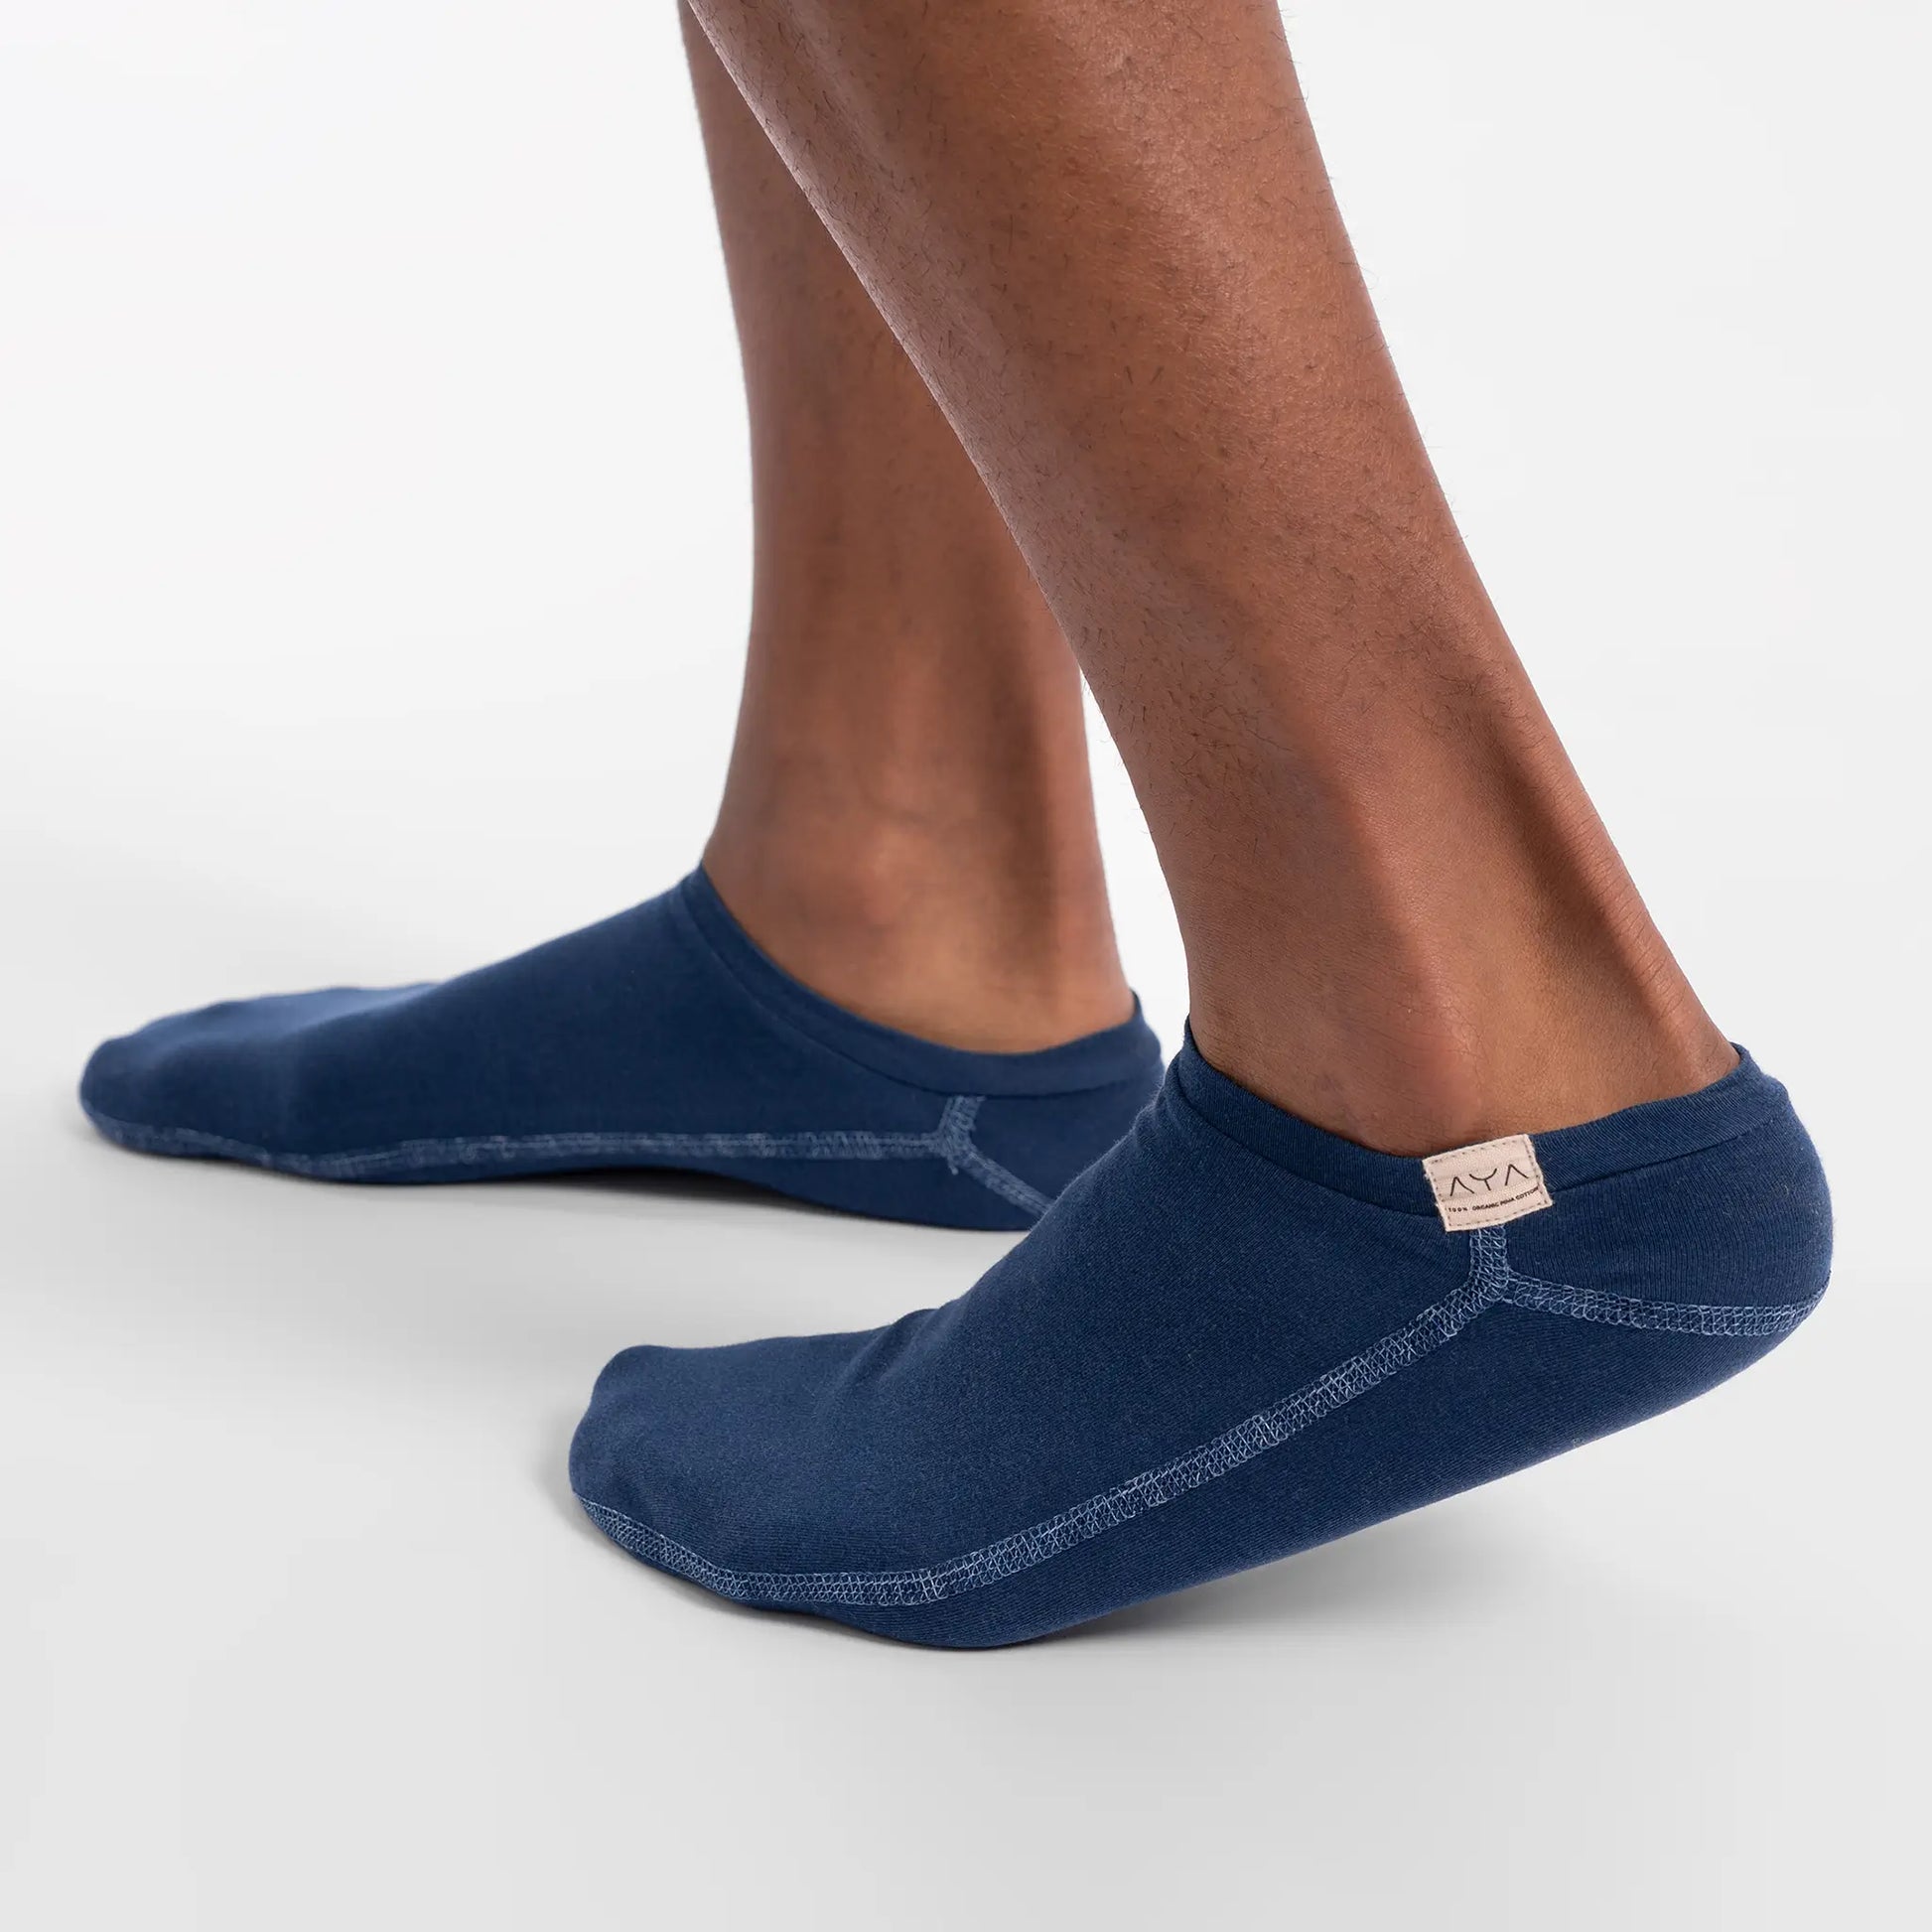 unisex slipper socks hypoallergenic color natural blue